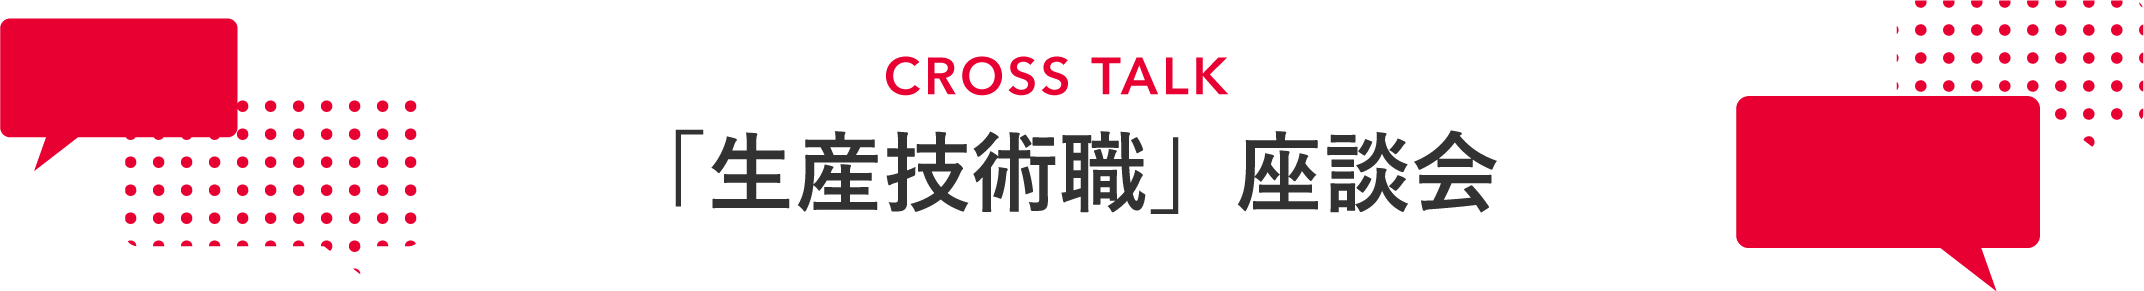 CROSS TALK 「生産技術職」座談会